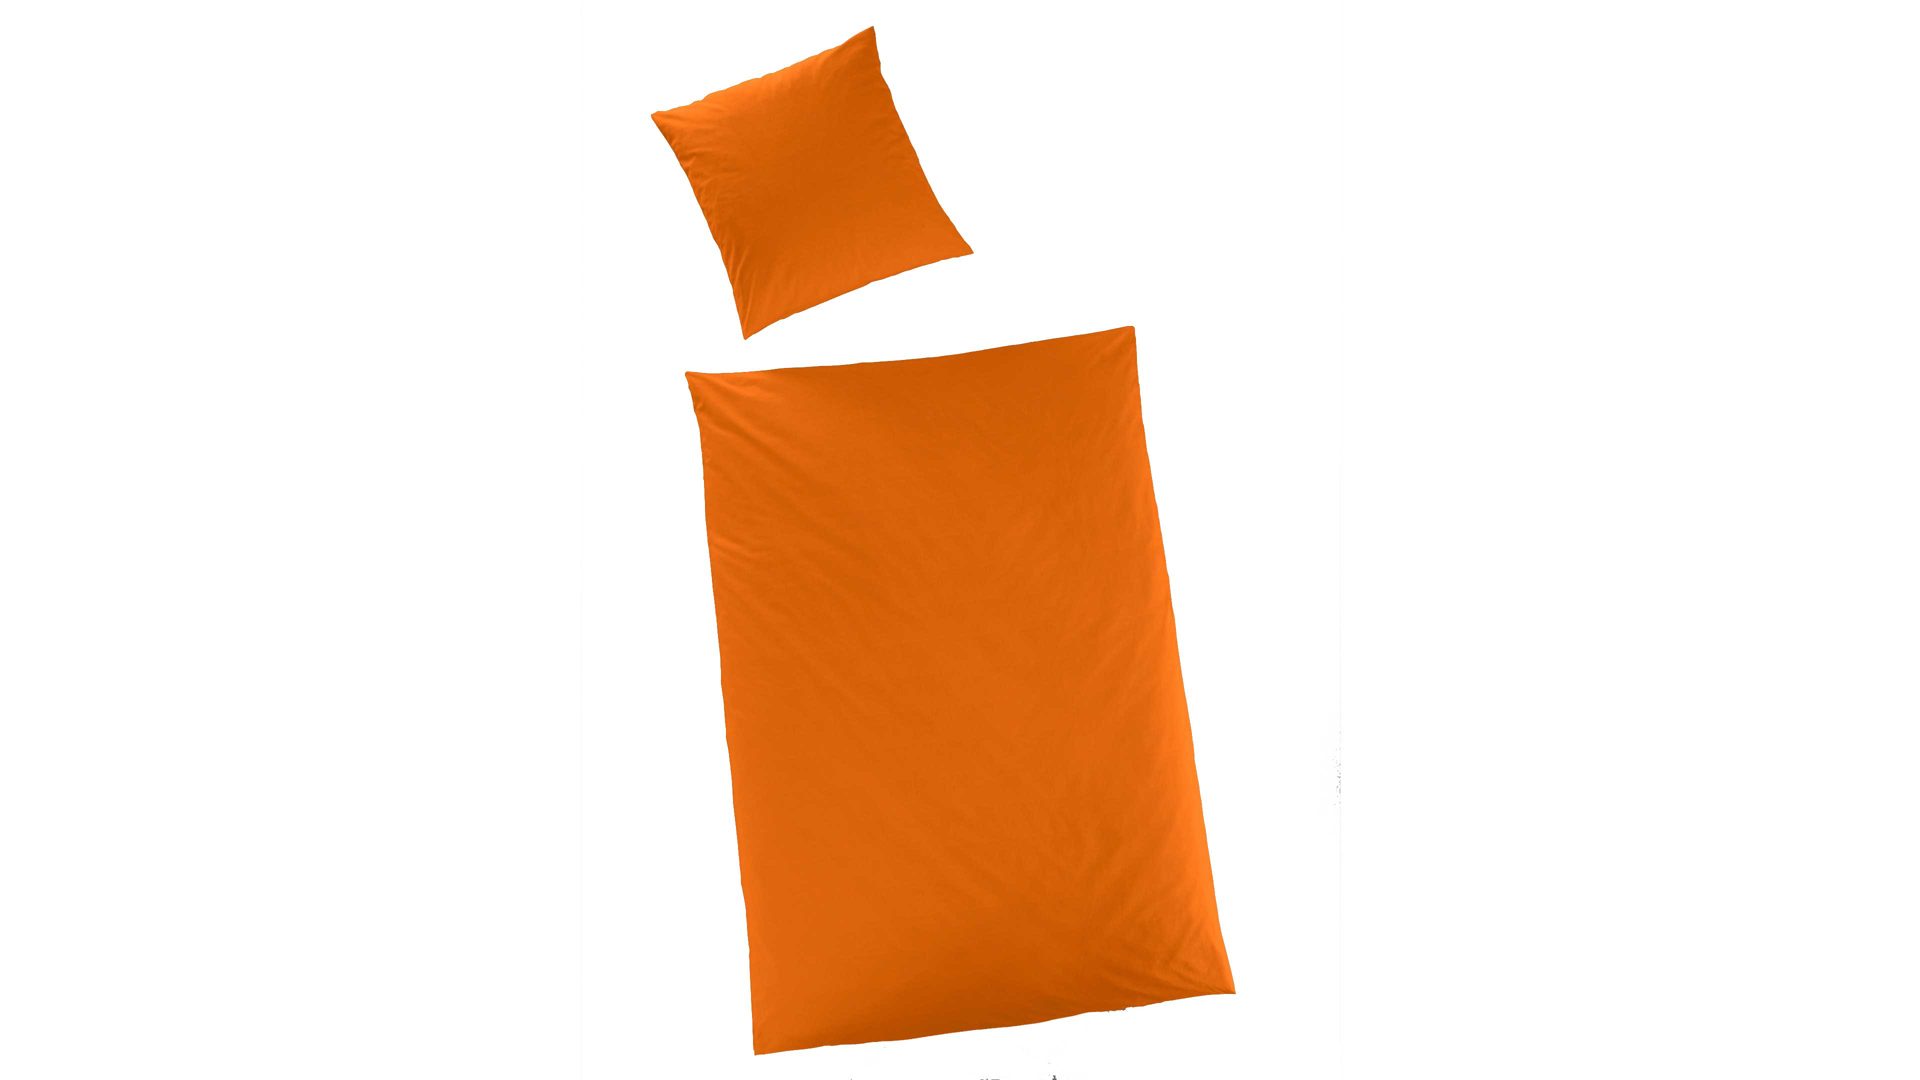 Bettwäsche-Set H.g. hahn haustextilien aus Stoff in Orange HAHN Luxus-Satin-Bettwäsche Sempre orangefarbener Baumwollsatin - zweiteilig, ca.135 x 200 cm